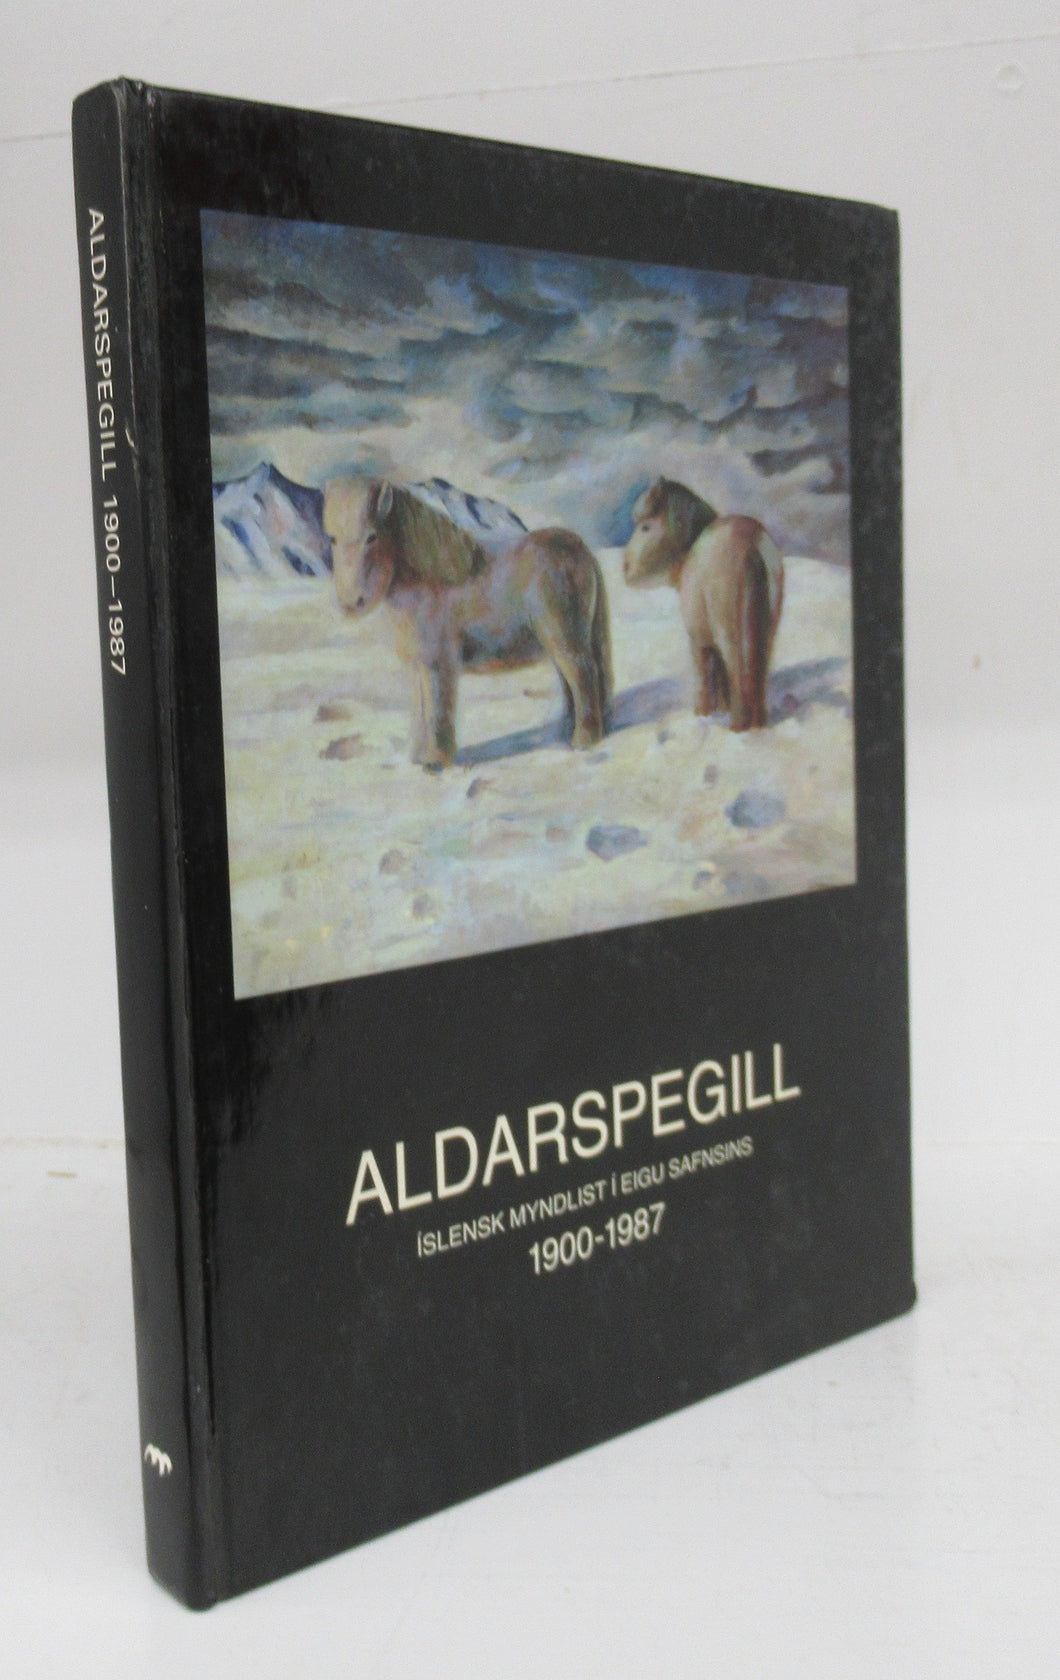 Aldarspegill: Islensk Myndlist i Eigu Safnsins, 1900-1987